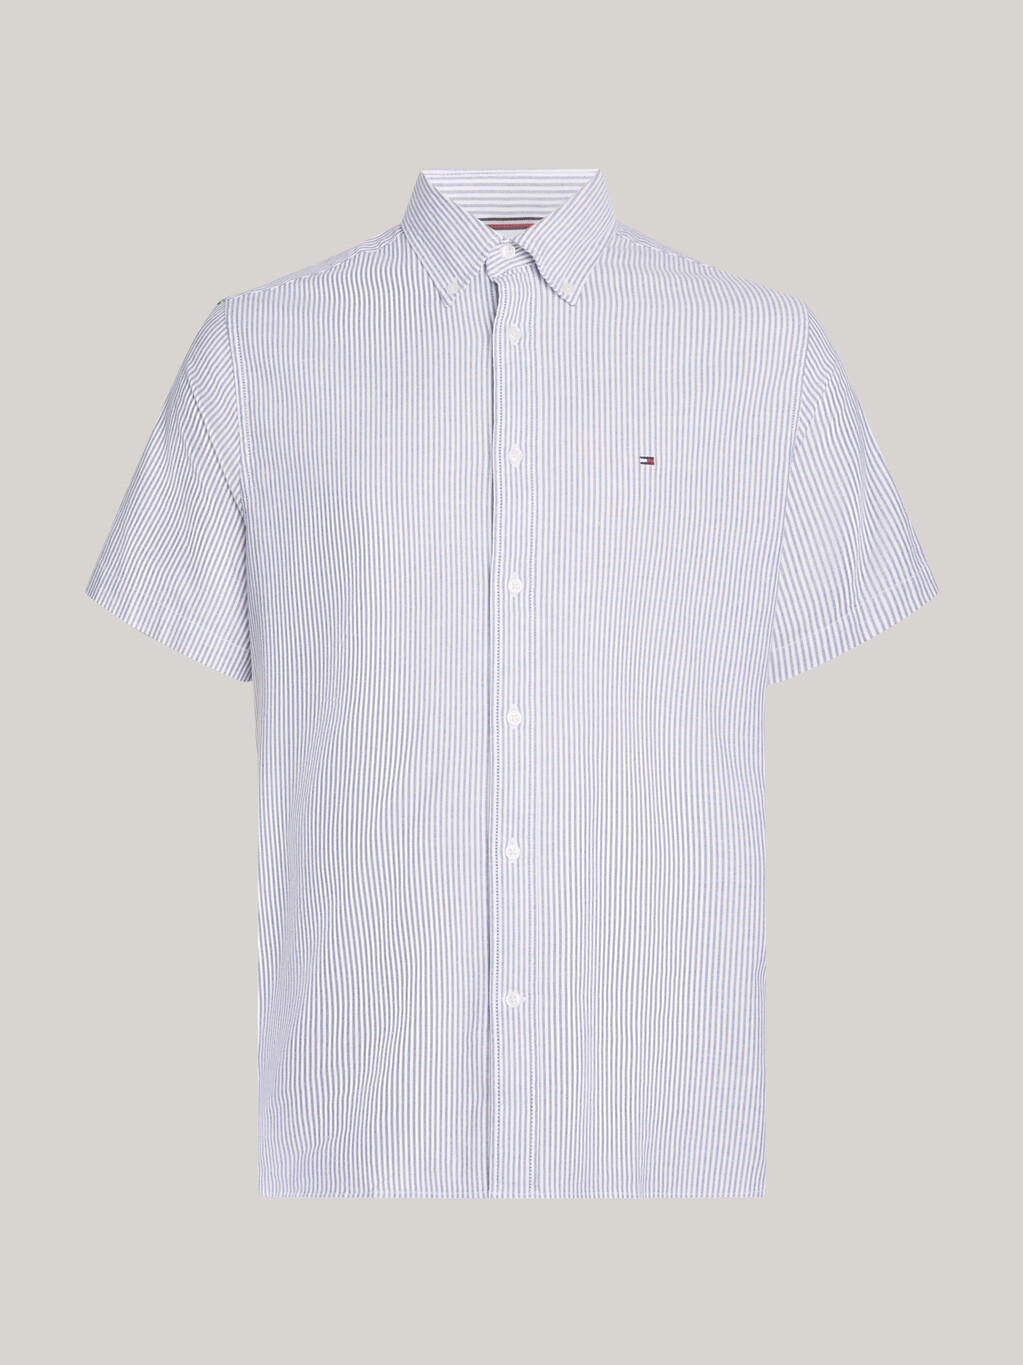 旗幟條紋短袖恤衫, Carbon Navy / Optic White, hi-res